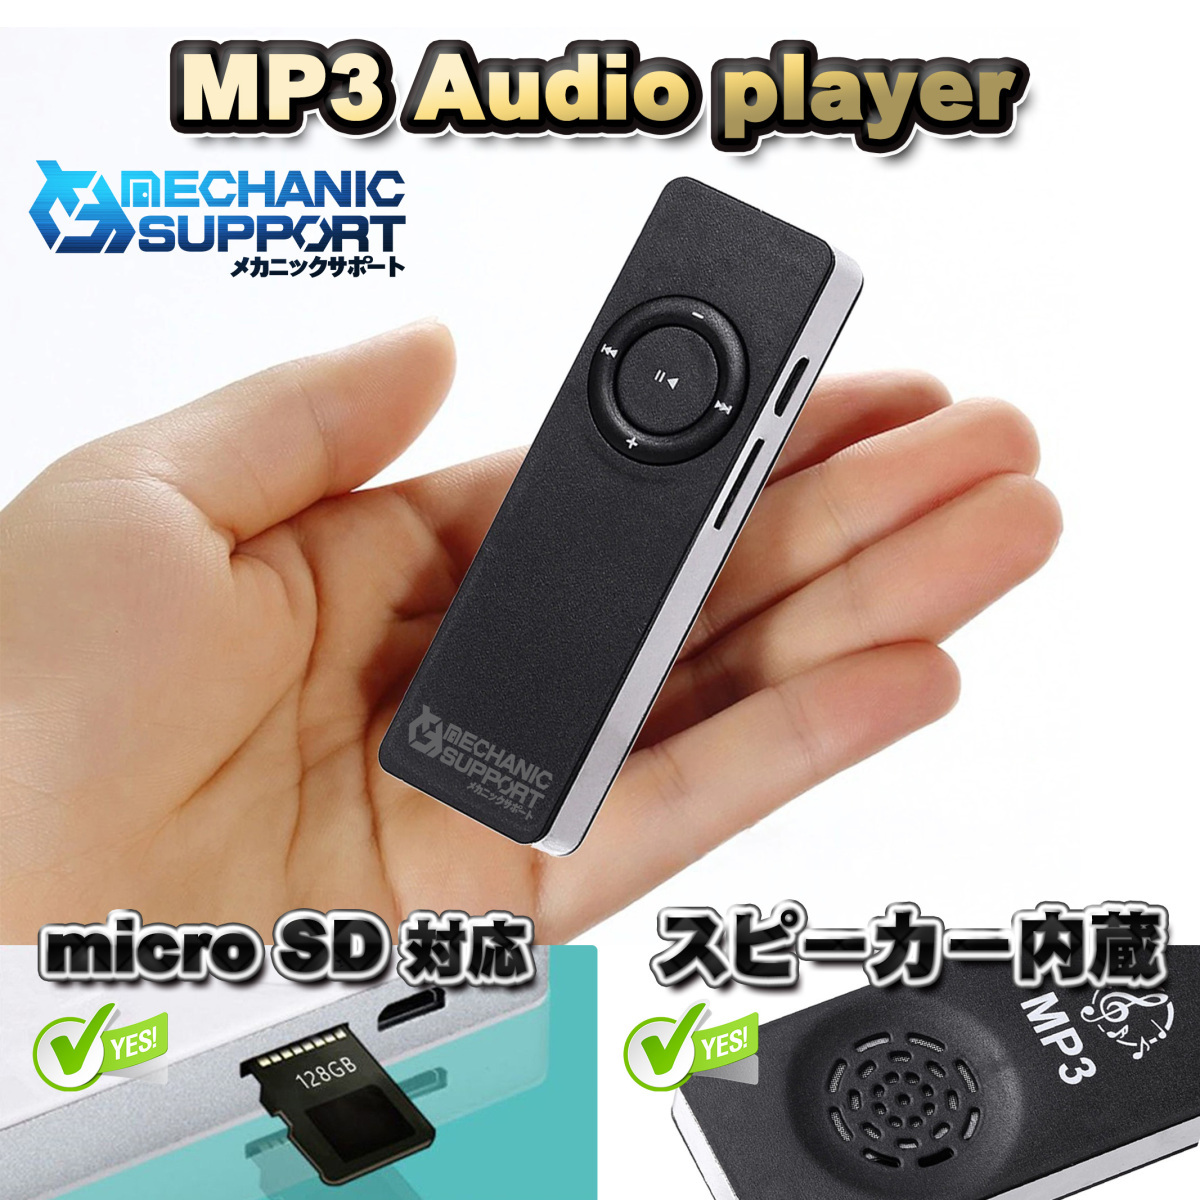 【ブラック】新品 長方形 スピーカー内蔵 MP3 音楽 プレイヤー SDカード式 メカニックサポート_画像1